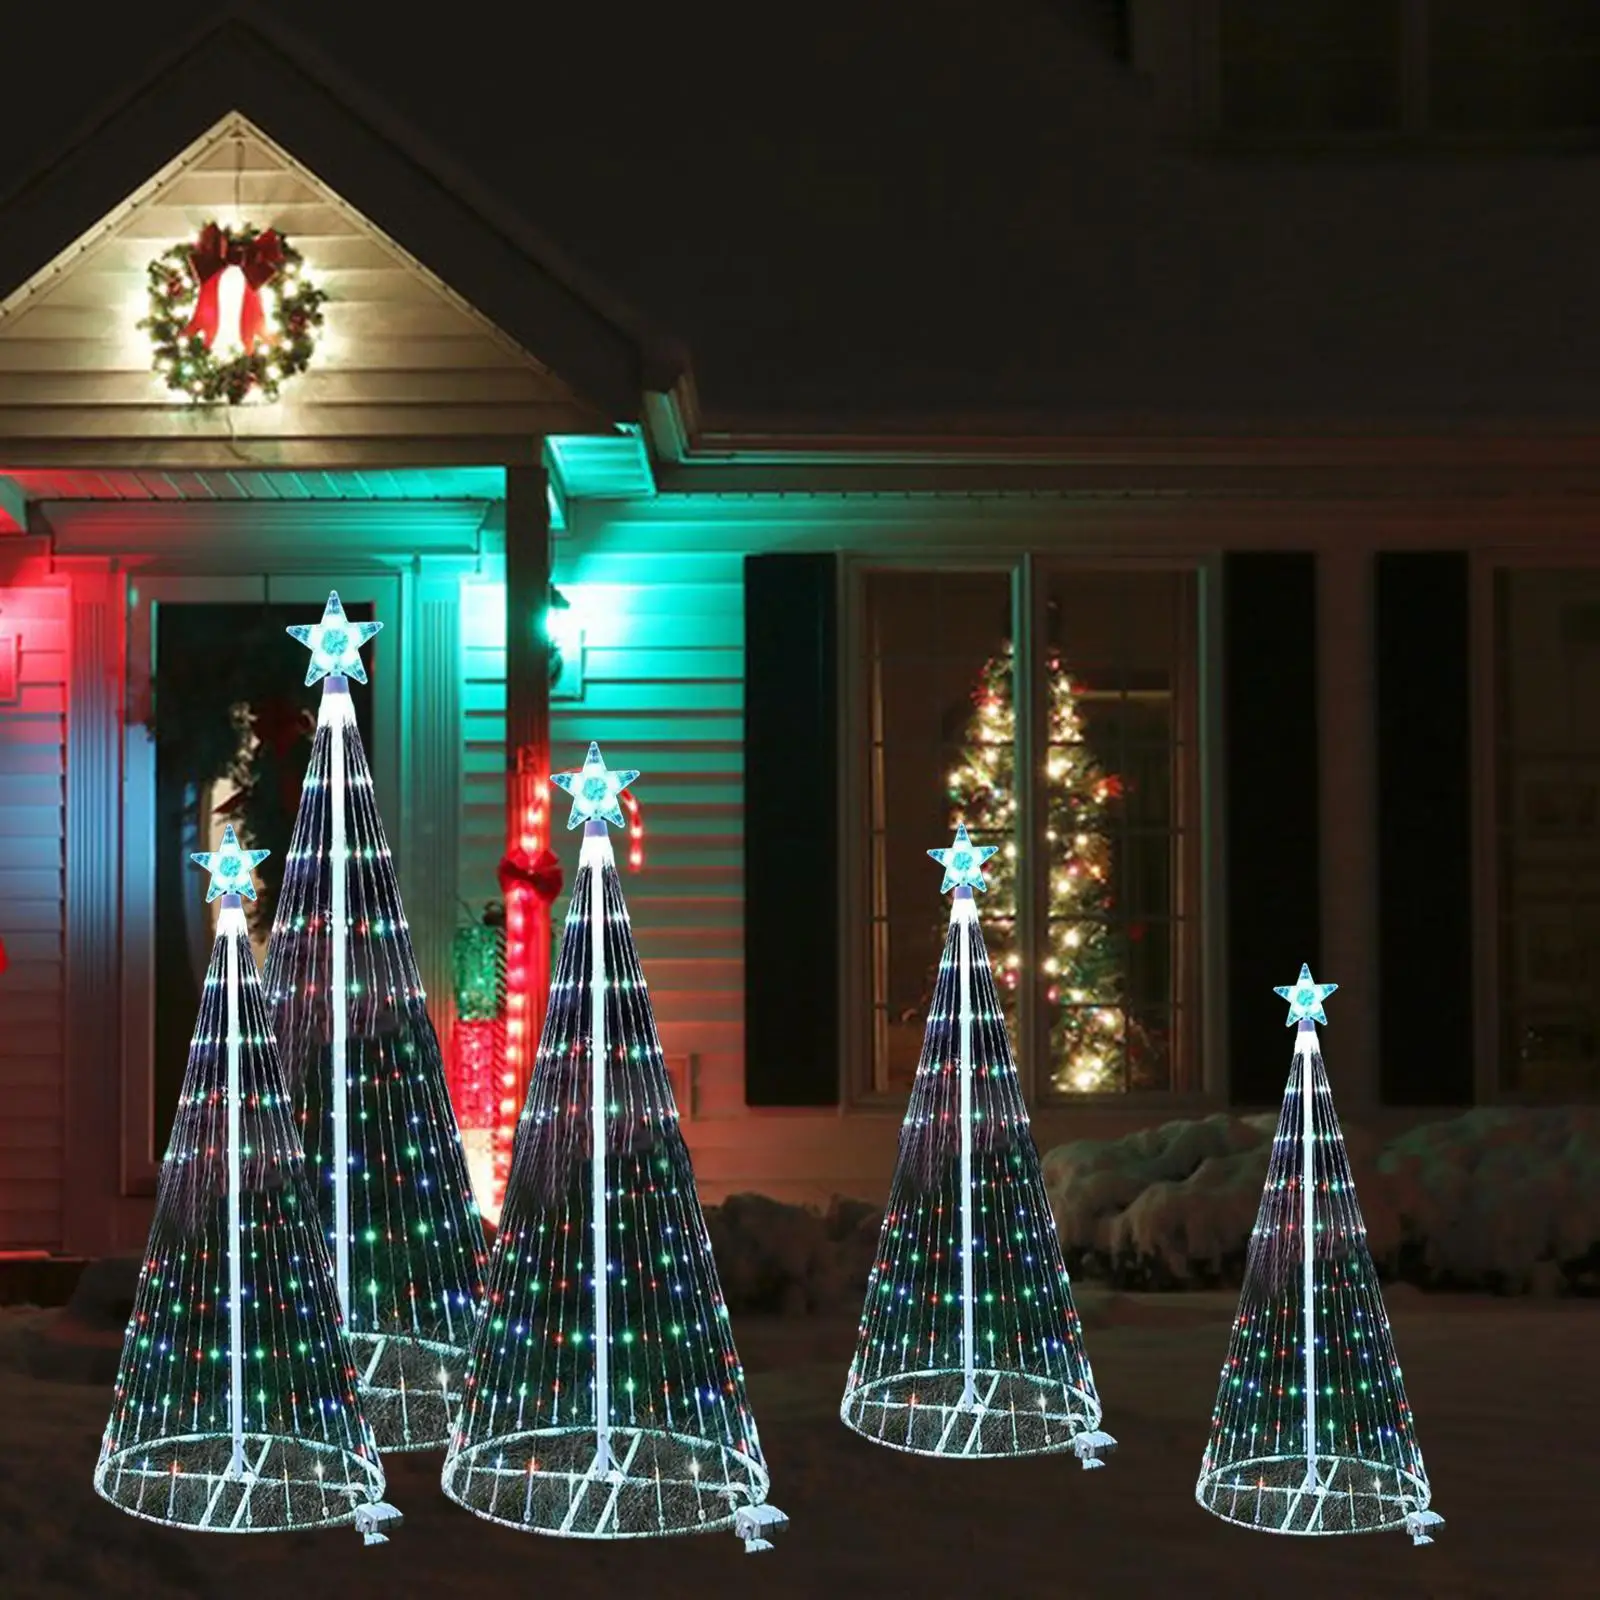 Christmas Tree Lights Christmas Lights Colorful for Xmas New Year Home Decor